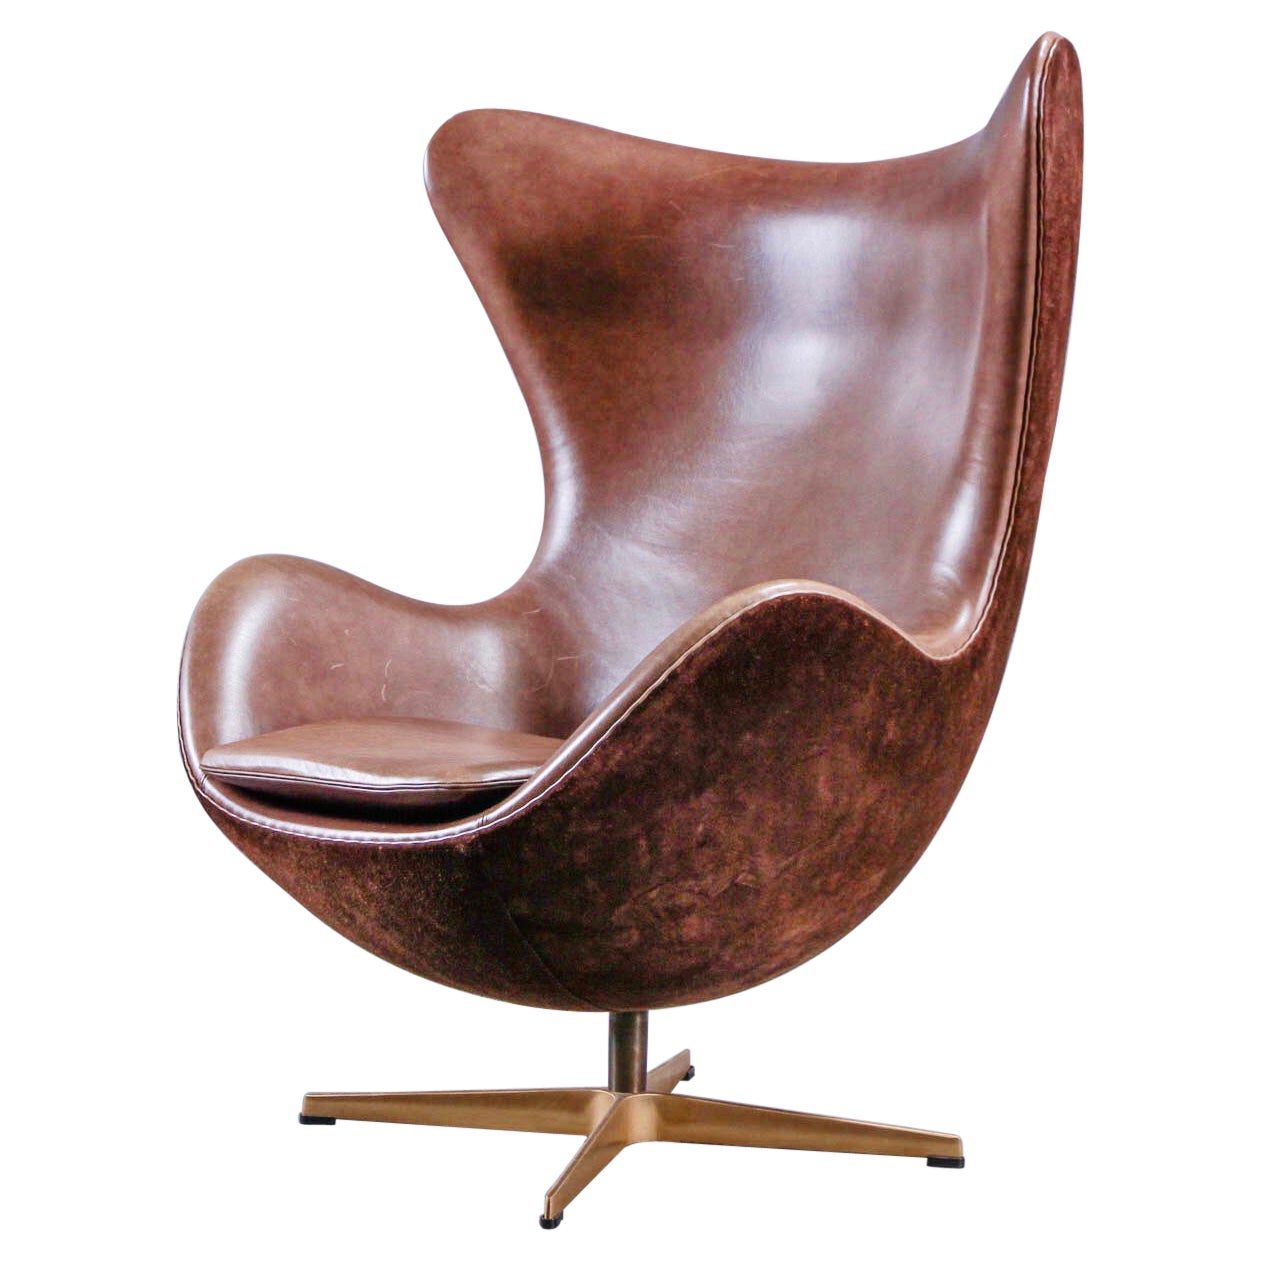 Arne Jacobsen 'Golden Egg Chair' von Fritz Hansen in Dänemark, nummerierte Ausgabe